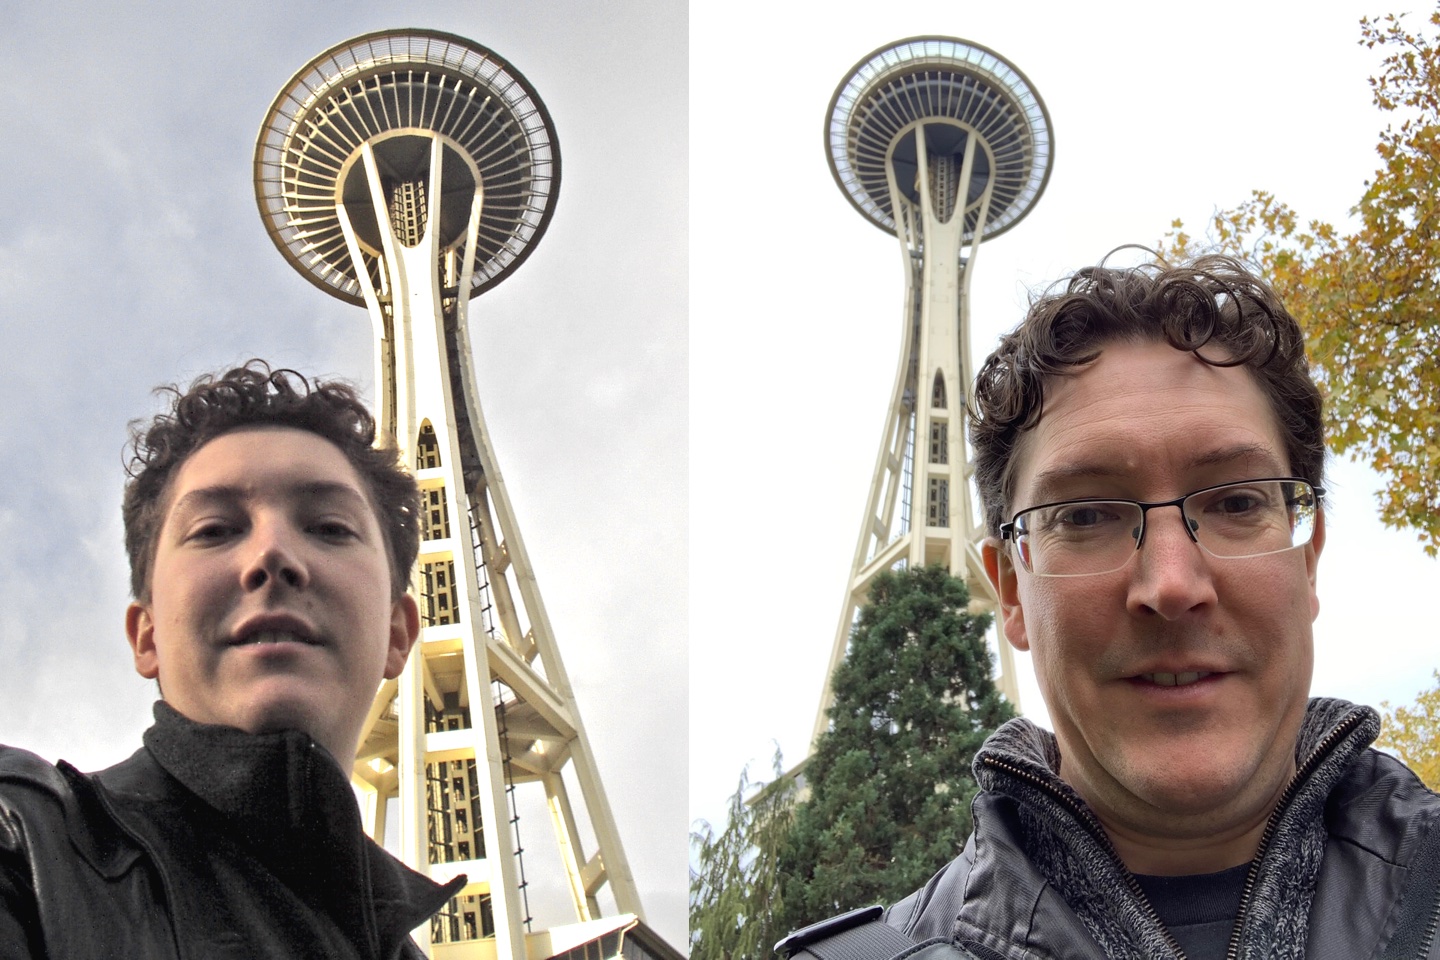 Space Needle Selfies, 16 years apart